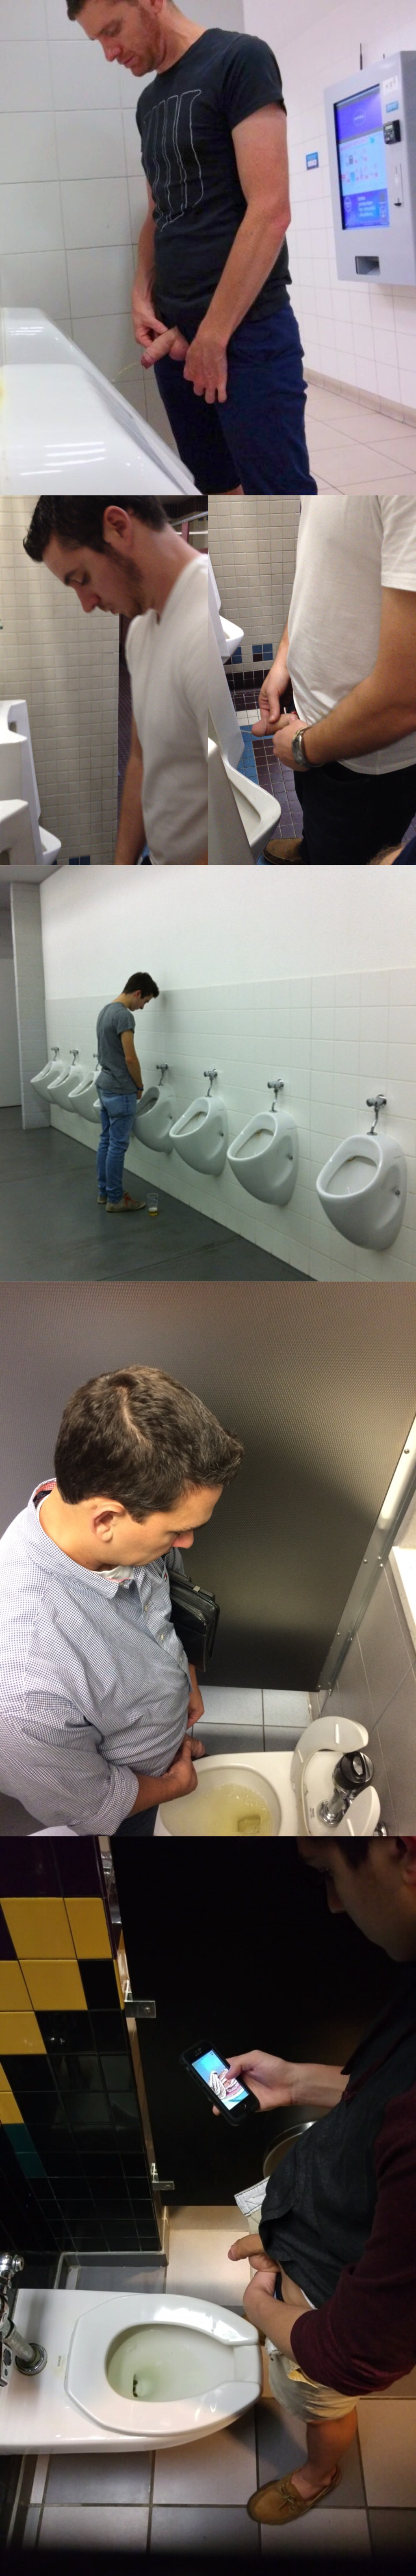 guys caught peeing urinals spycam